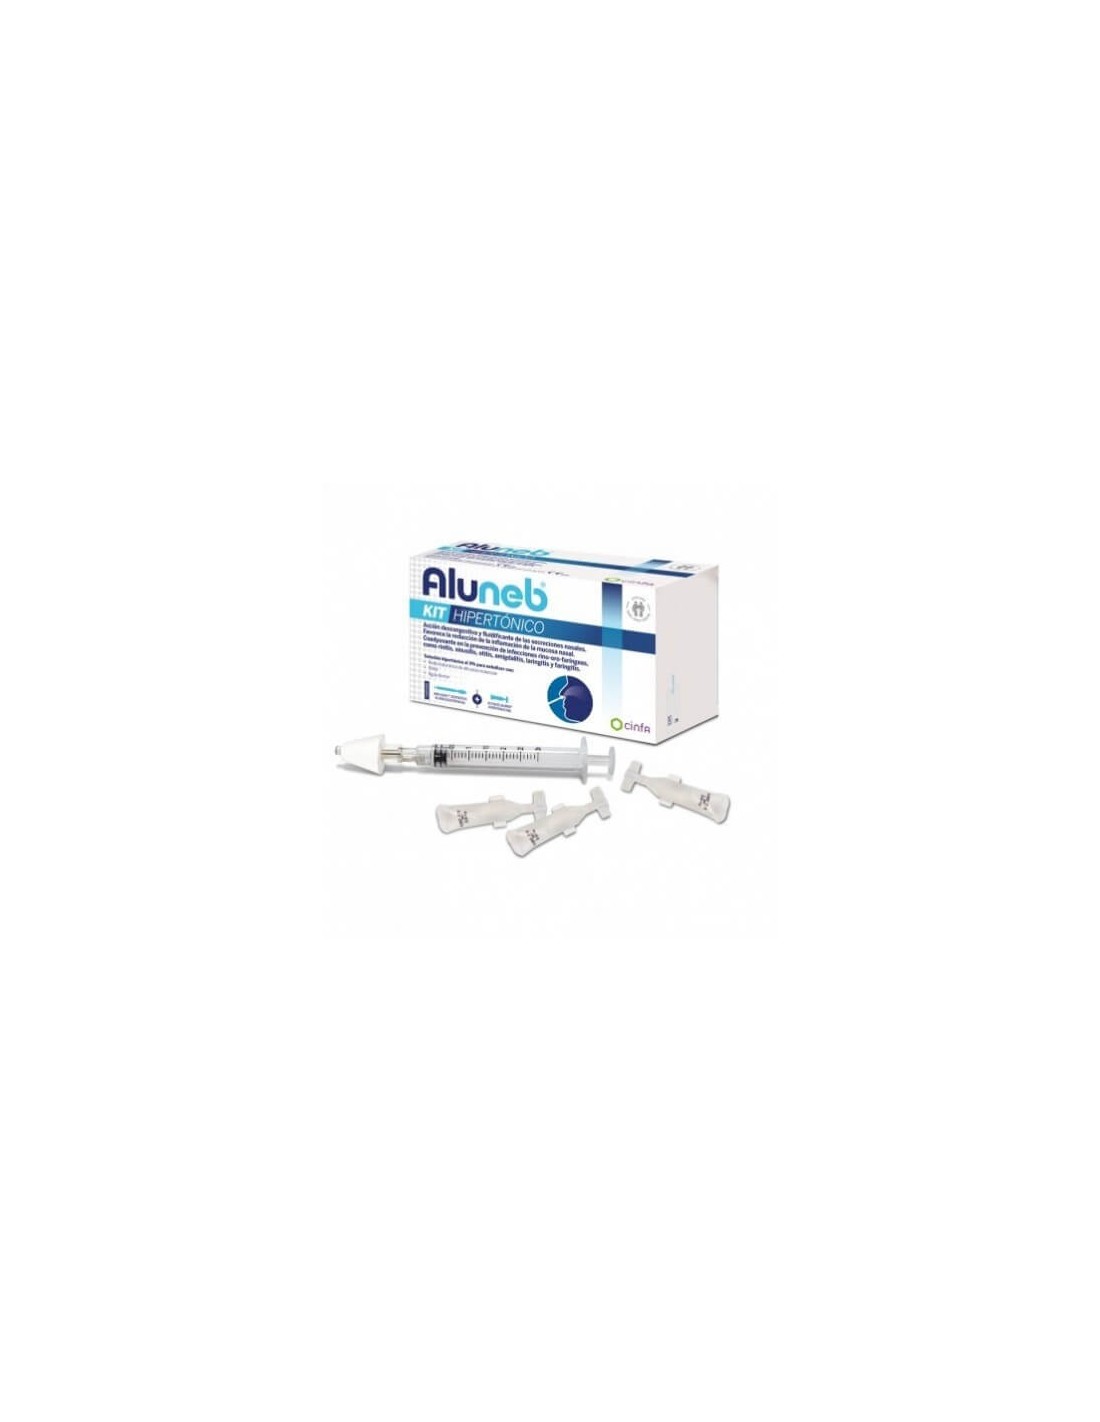 Aluneb hipertonico 5ml 20 viales - Farmacia en Casa Online